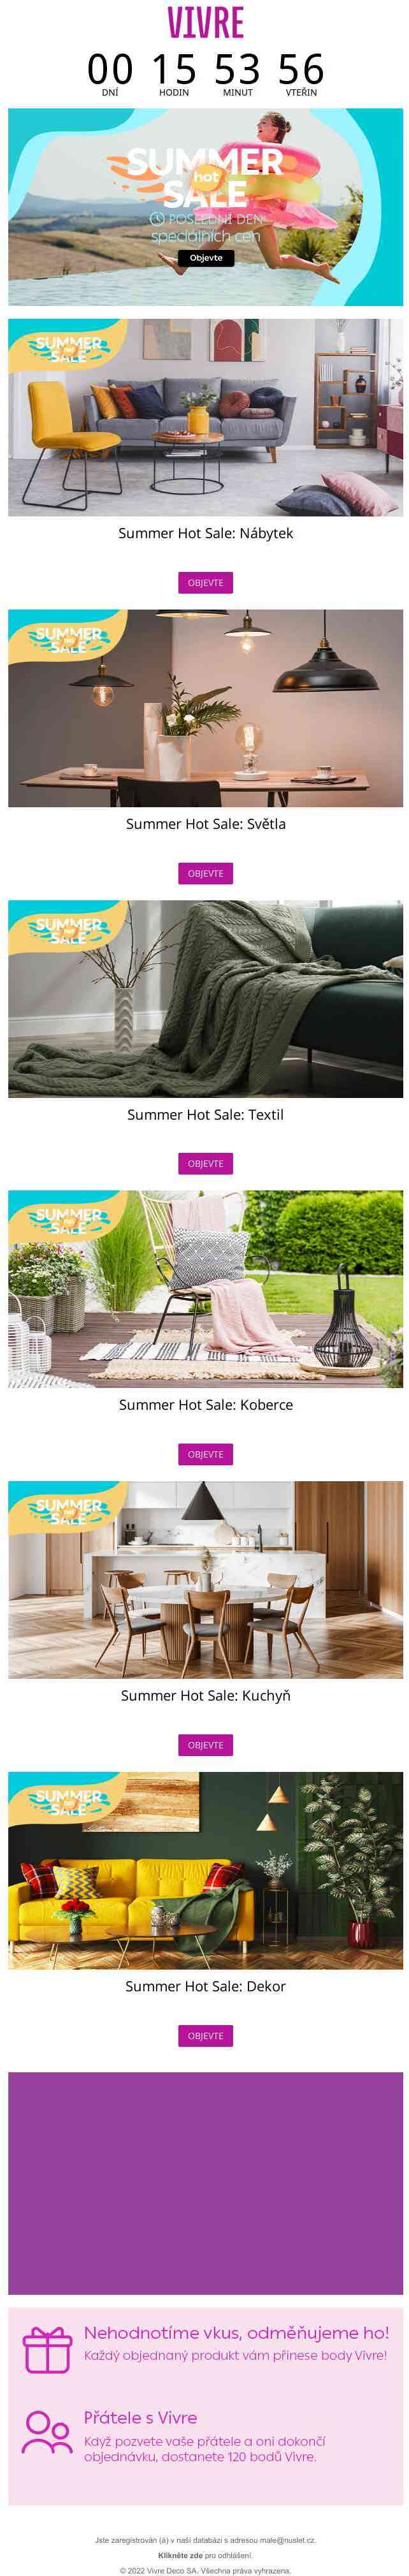 Nepromeškejte! ⏰ Je tady poslední den Summer Hot Sale! Získejte rychle své oblíbené produkty!